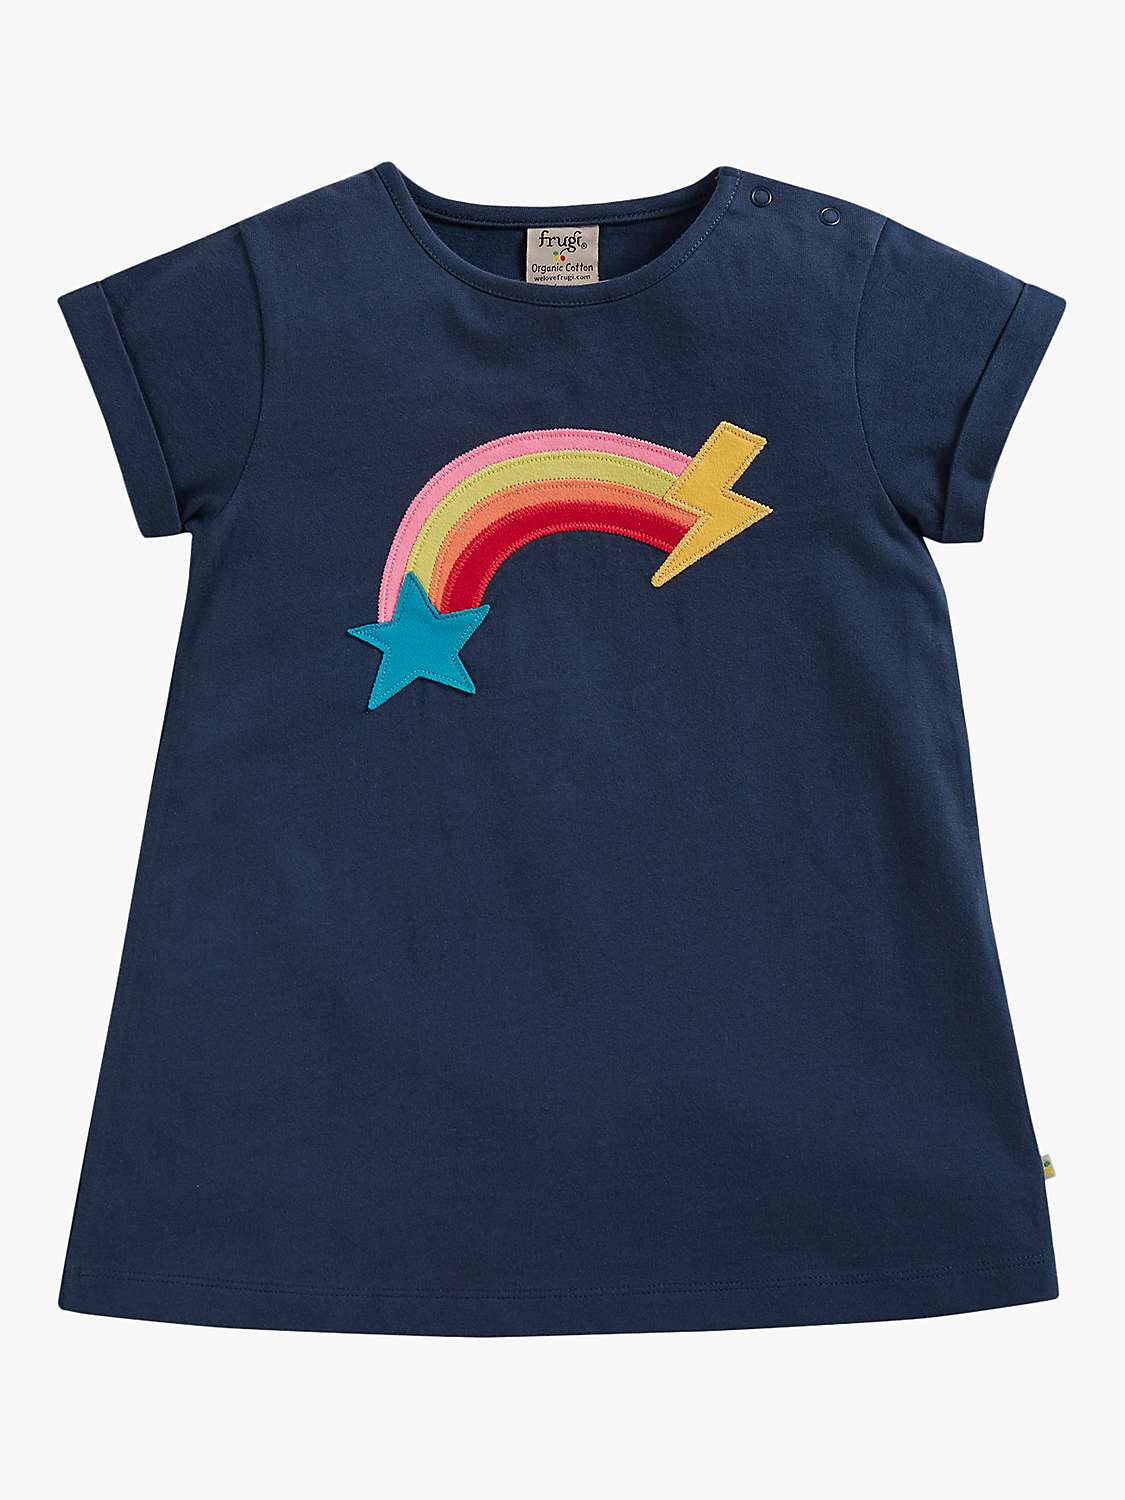 Buy Frugi Kids' Lizzie Organic Cotton Rainbow Applique Top, Indigo Online at johnlewis.com